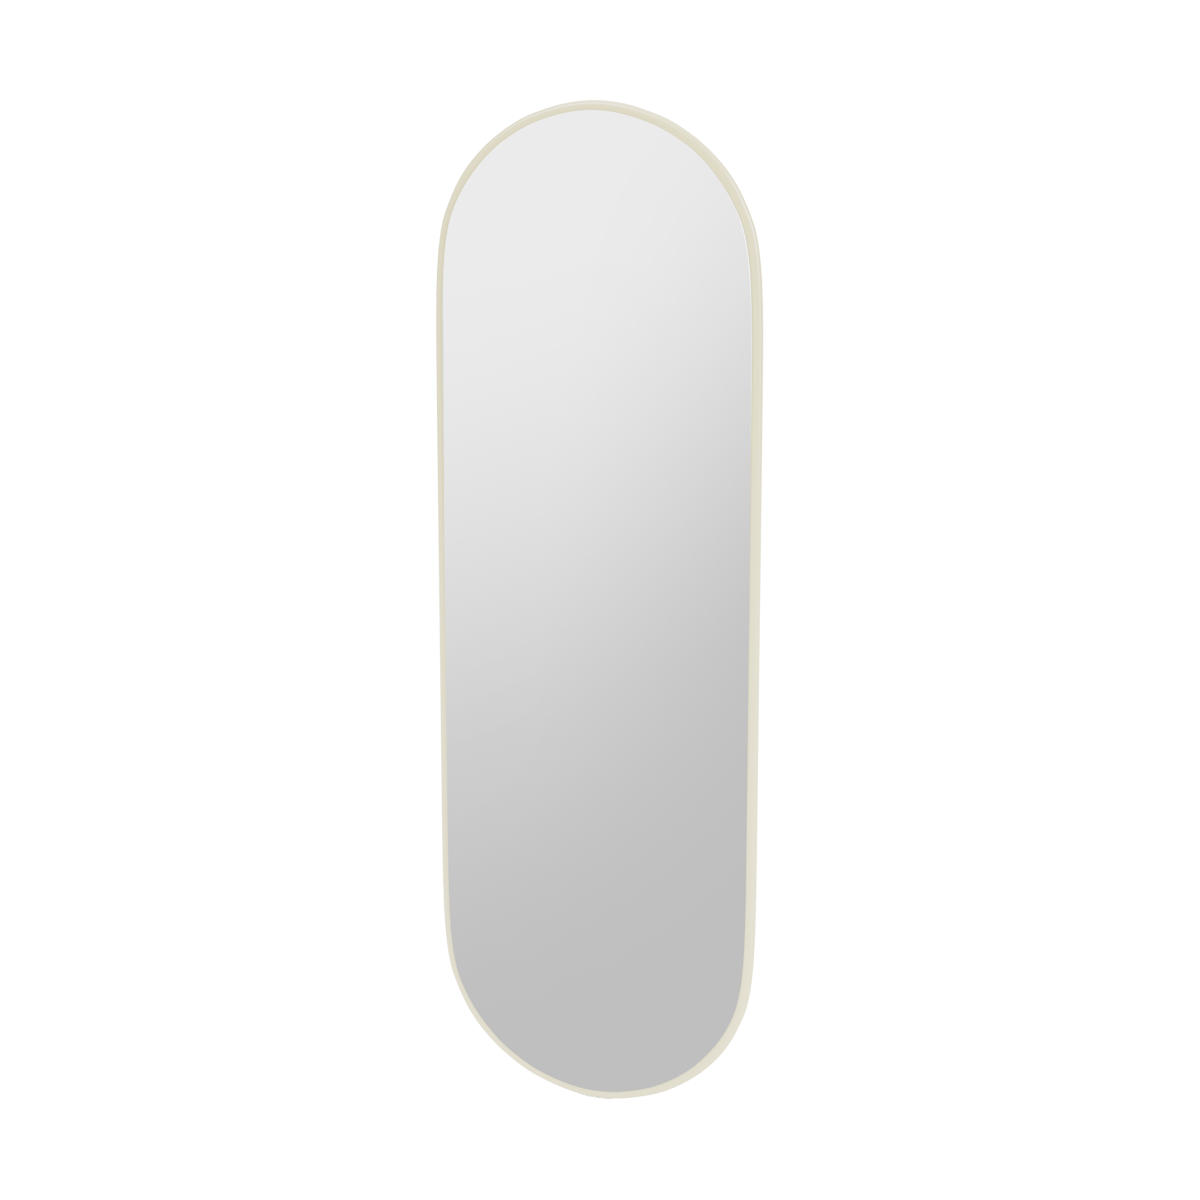 Montana FIGUUR Mirror Spiegel - SP824R Vanilla